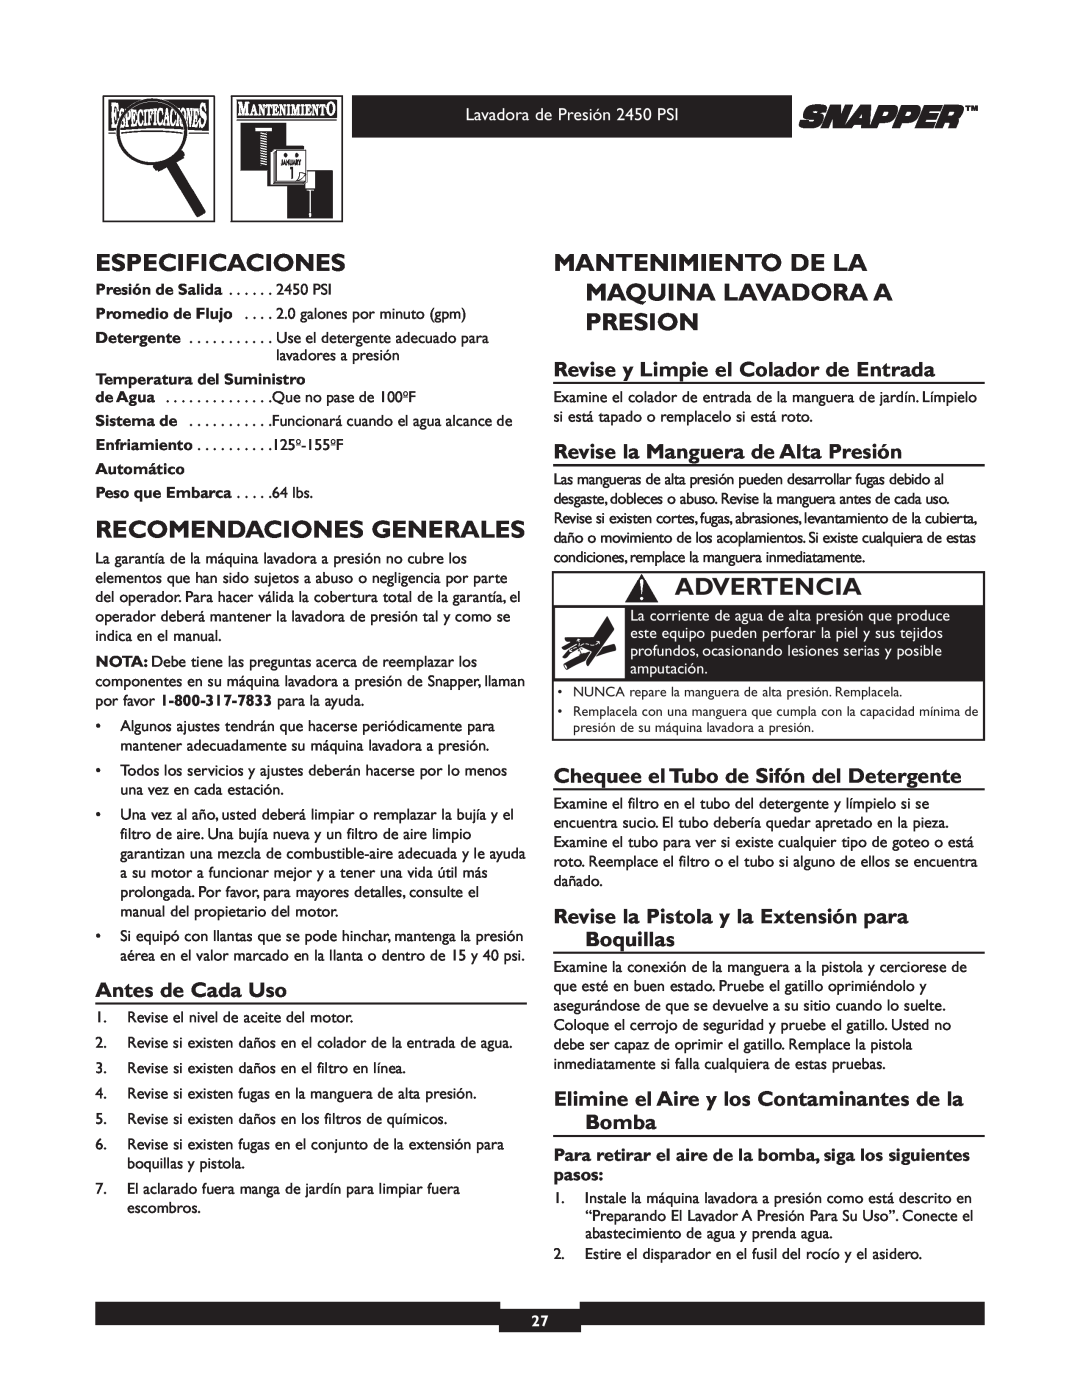 Snapper 020229 Especificaciones, Recomendaciones Generales, Mantenimiento De La Maquina Lavadora A Presion, Advertencia 